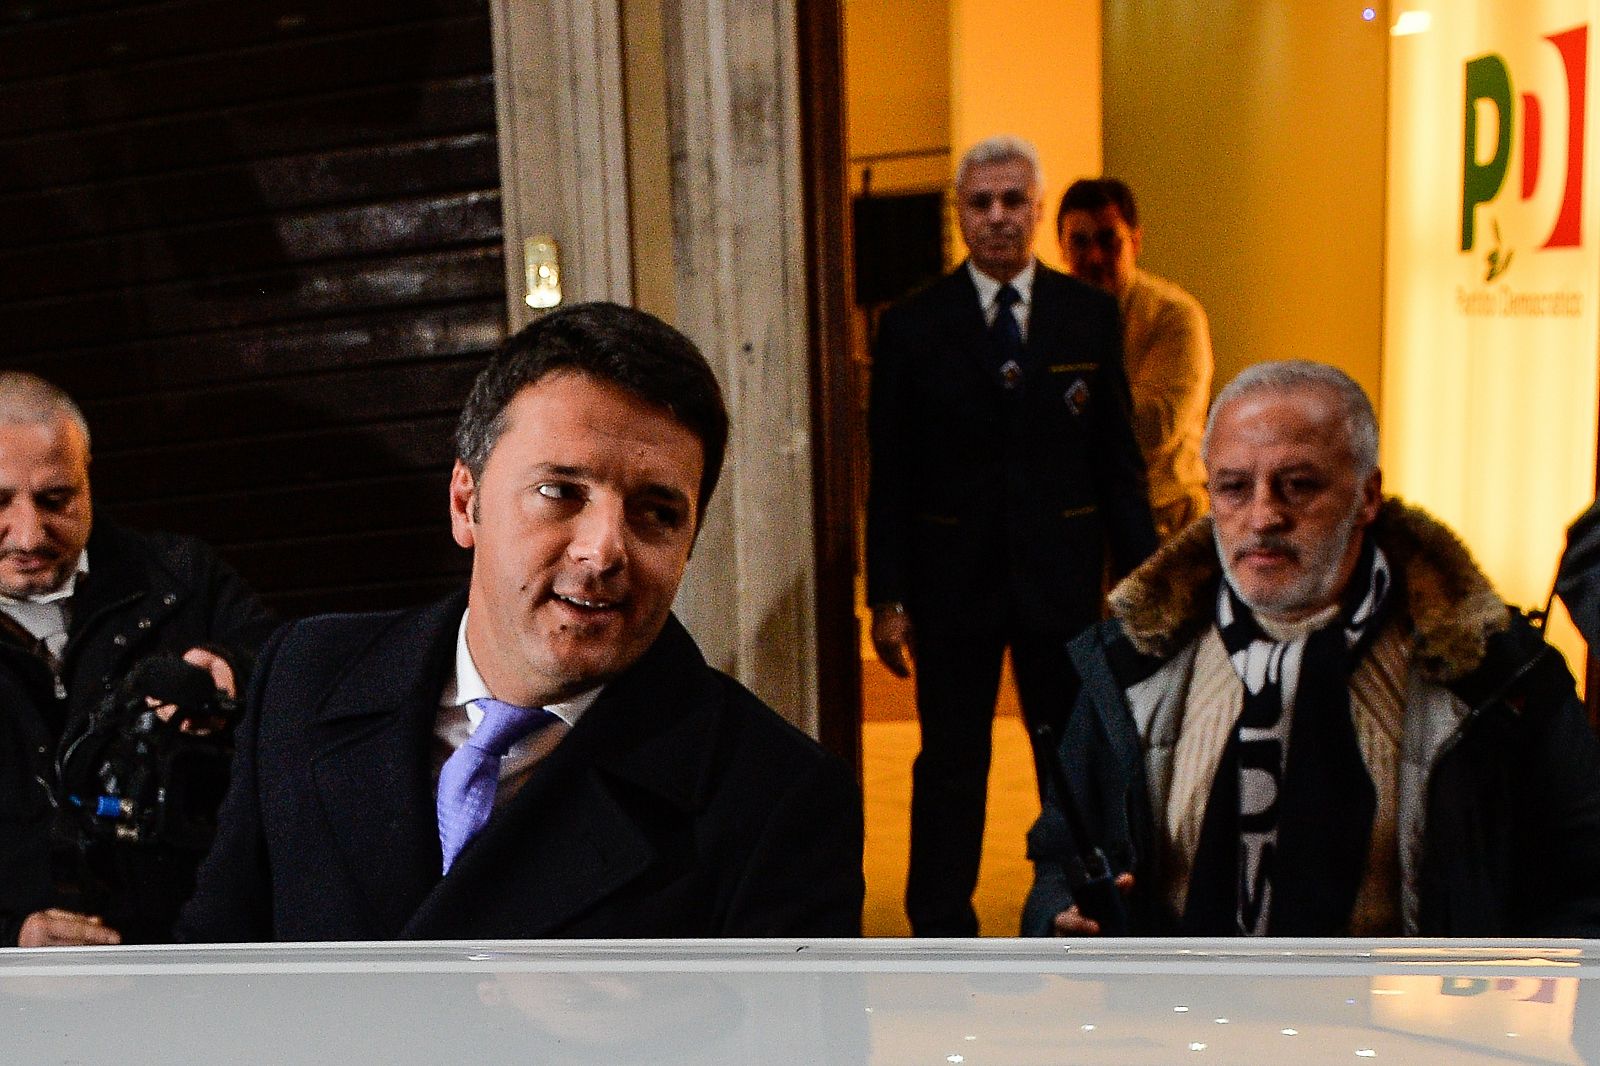 Matteo Renzi acude a la sede del Partido DemocrMatteo Renzi acude a la sede del Partido Democrático para dar explicaciones por su pacto con Berlusconi.